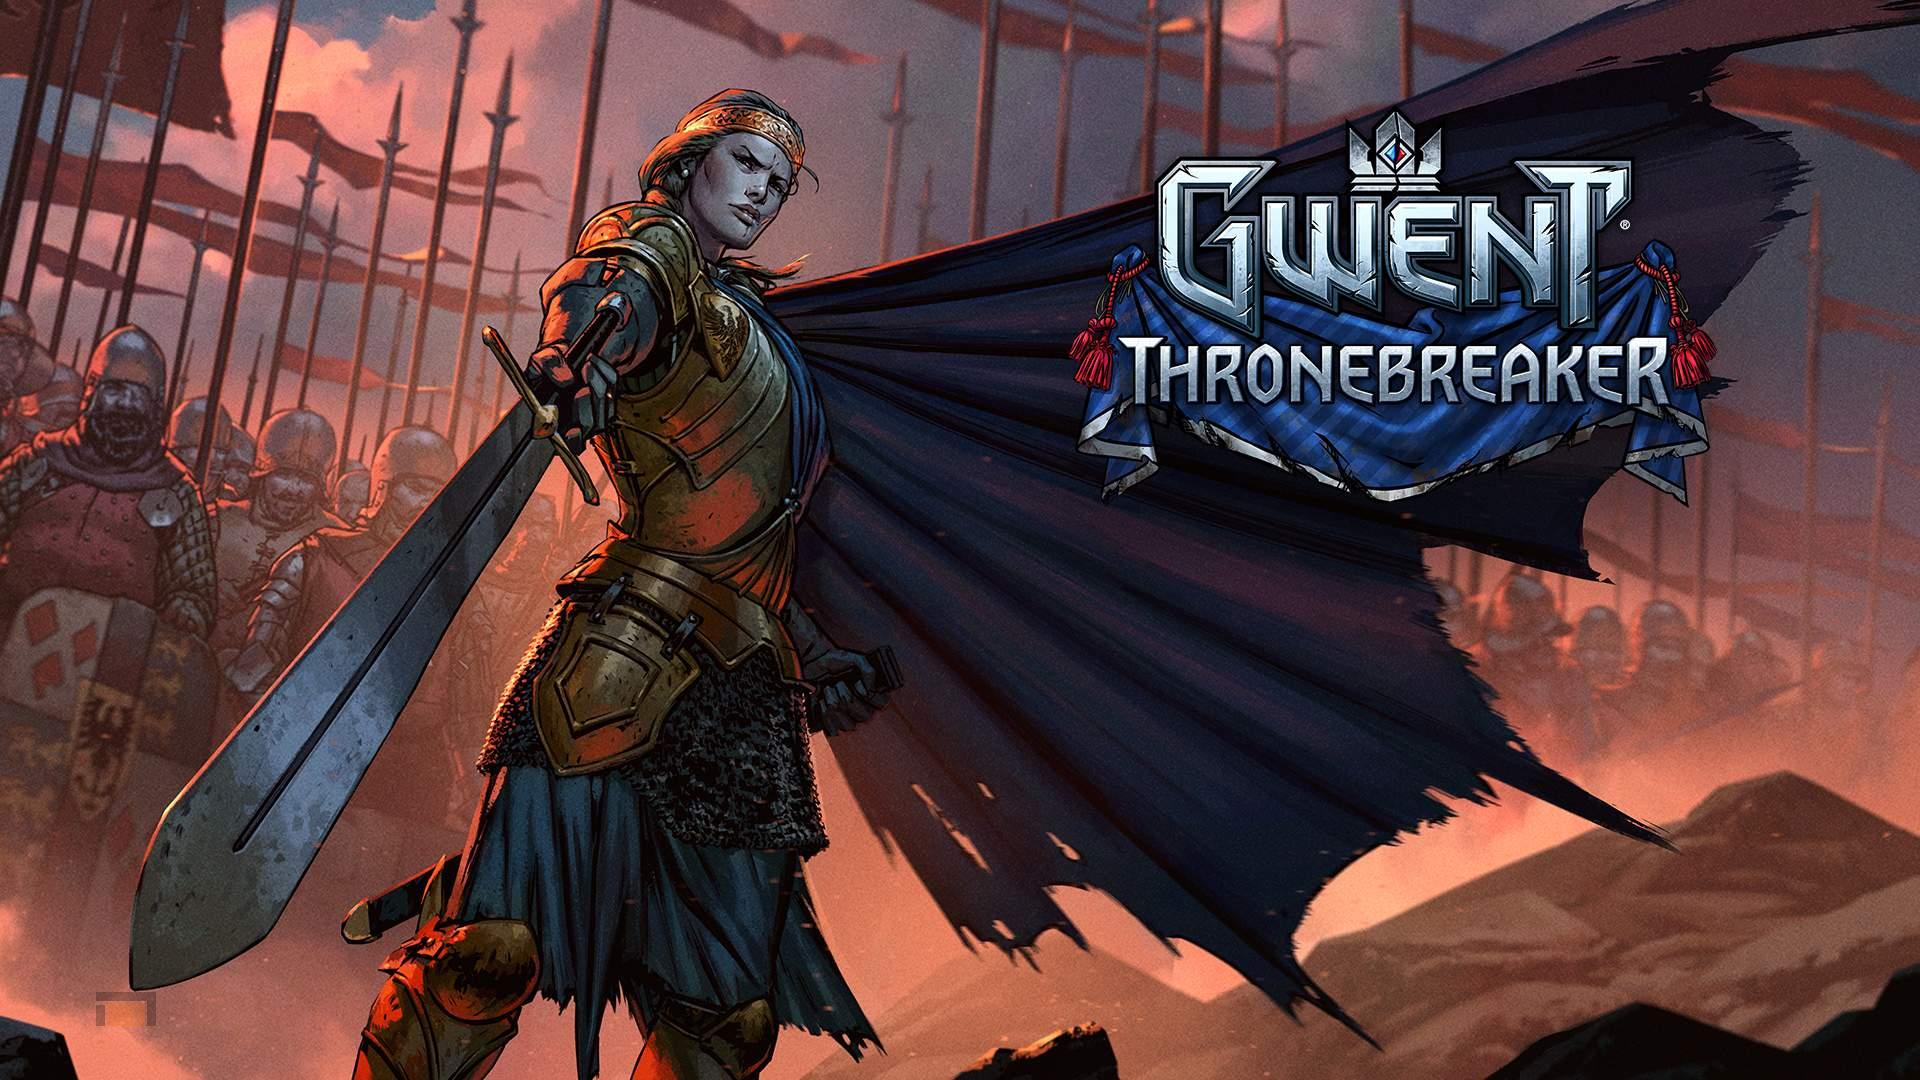 Gwent tendrá modo historia y se llamará Thronebreaker. Además anunciados torneos públicos.